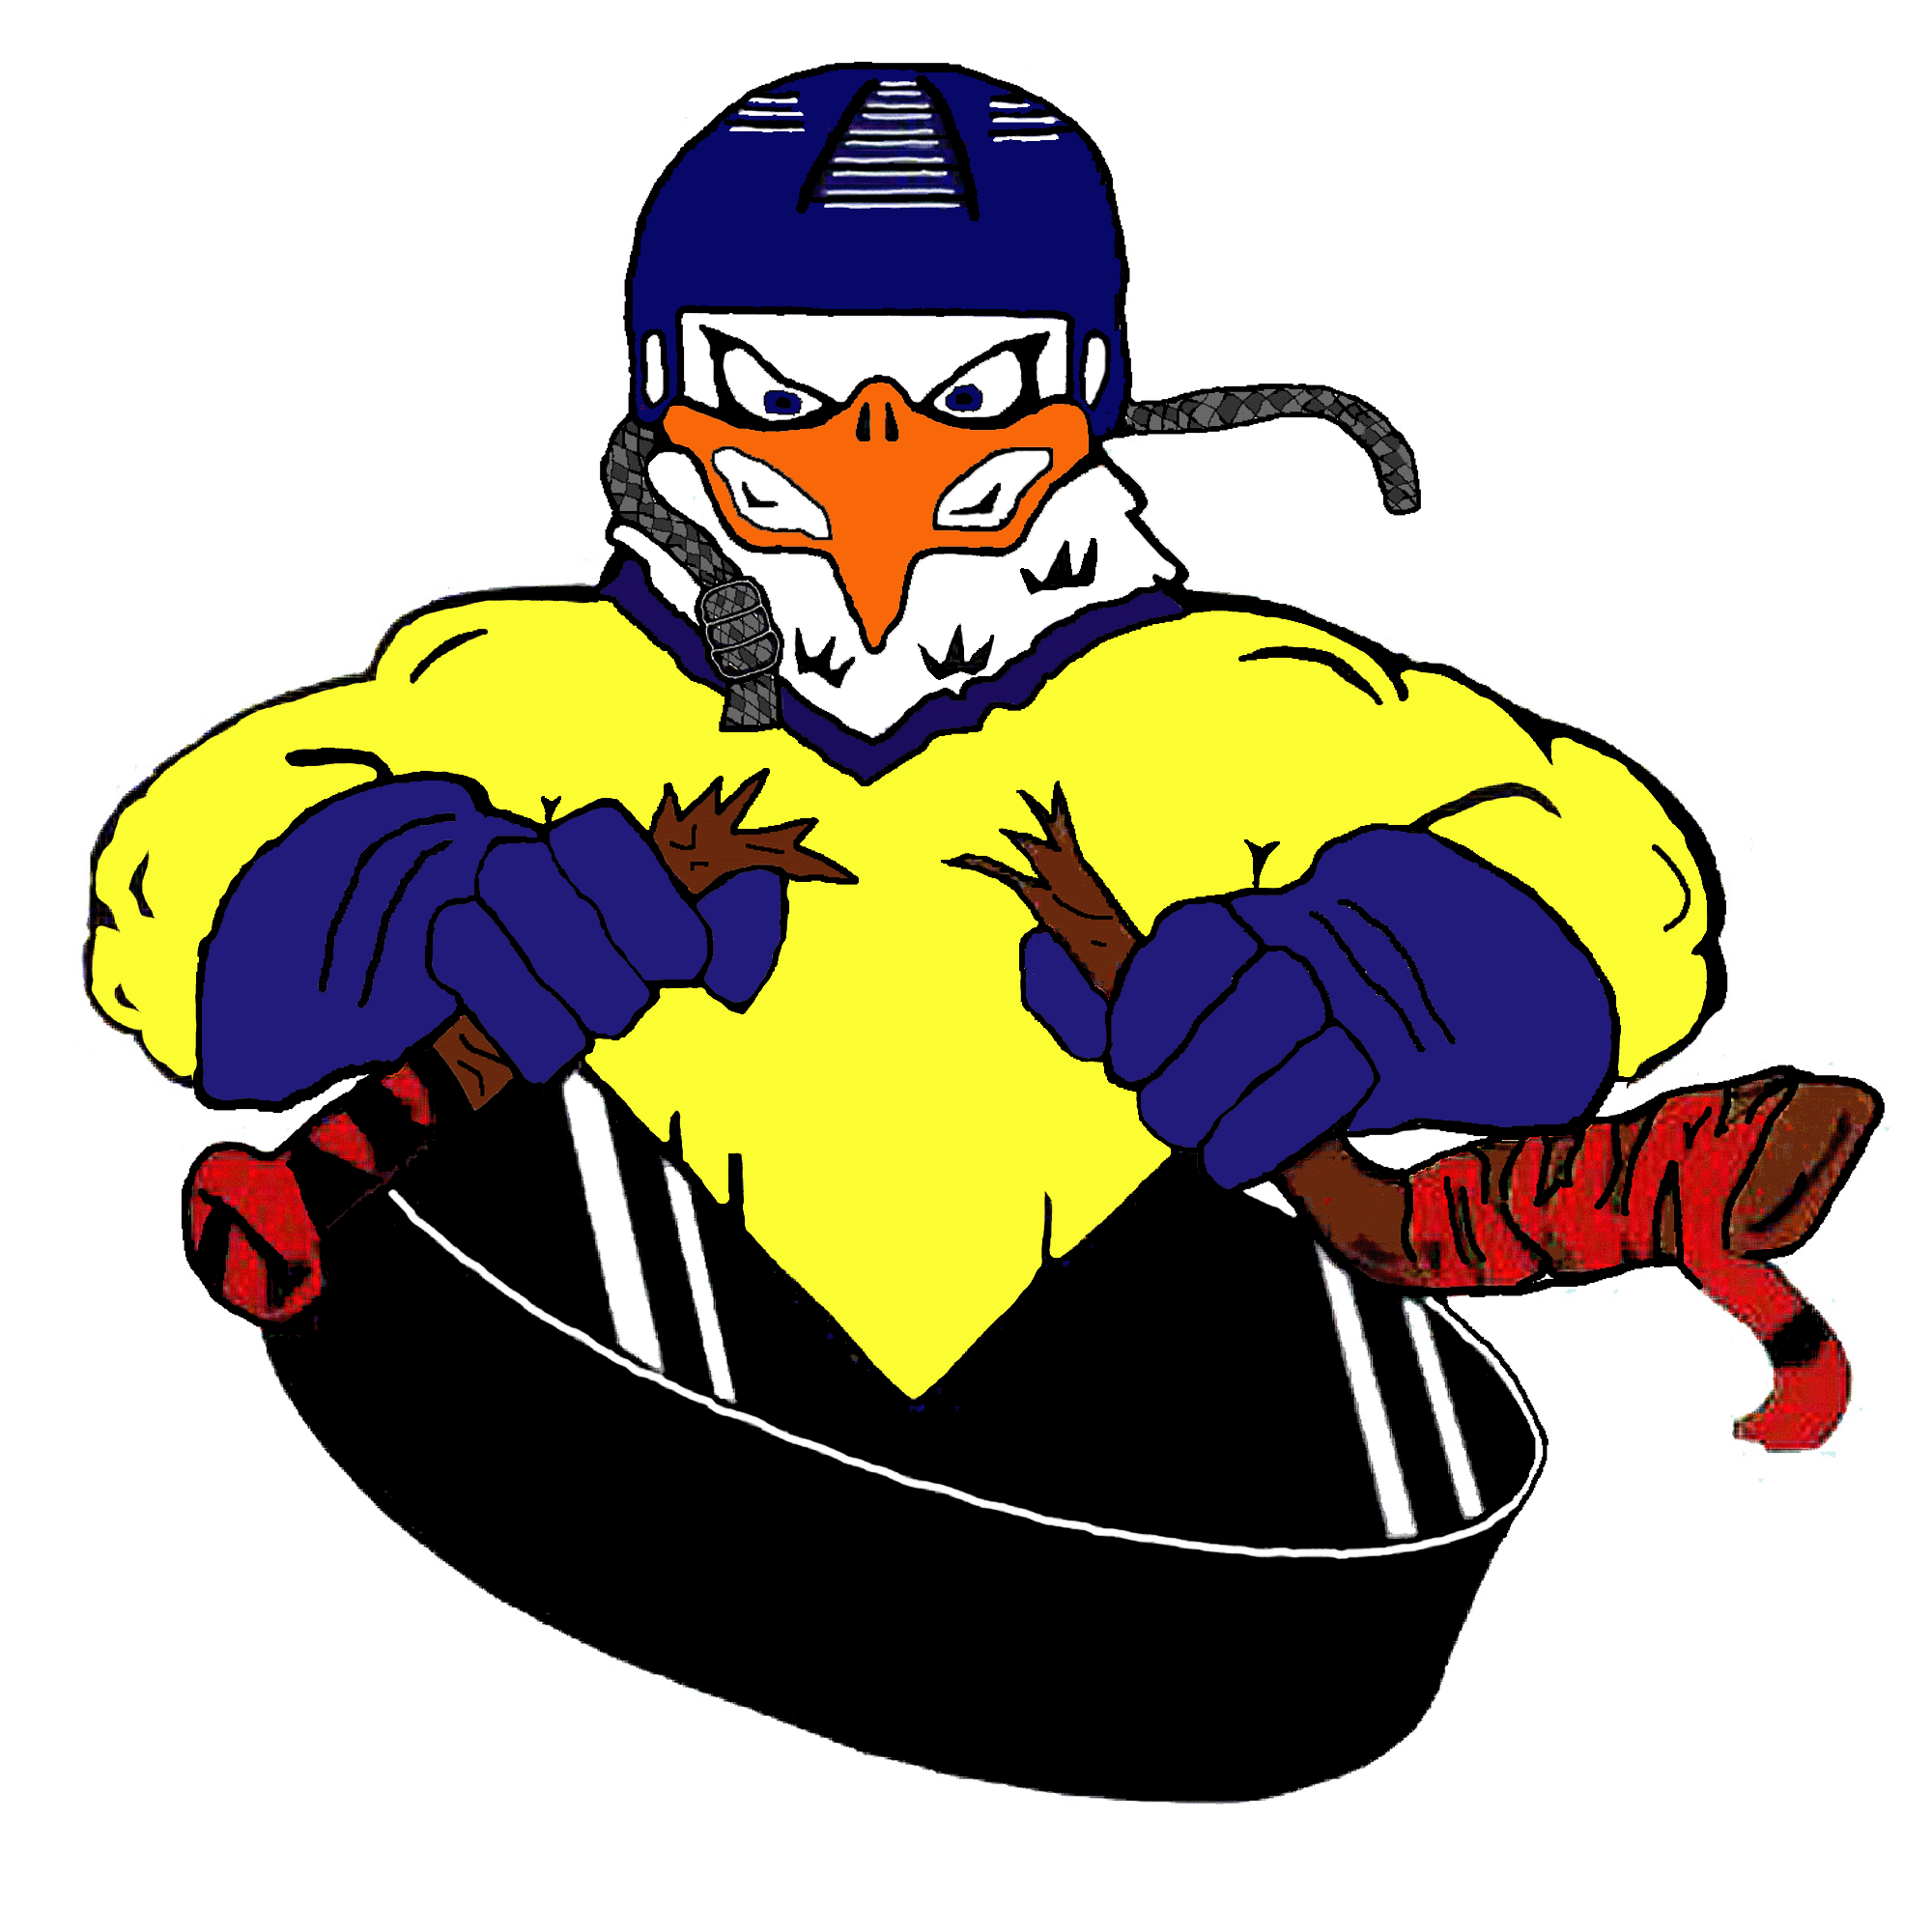 Icehawks_logo.gif